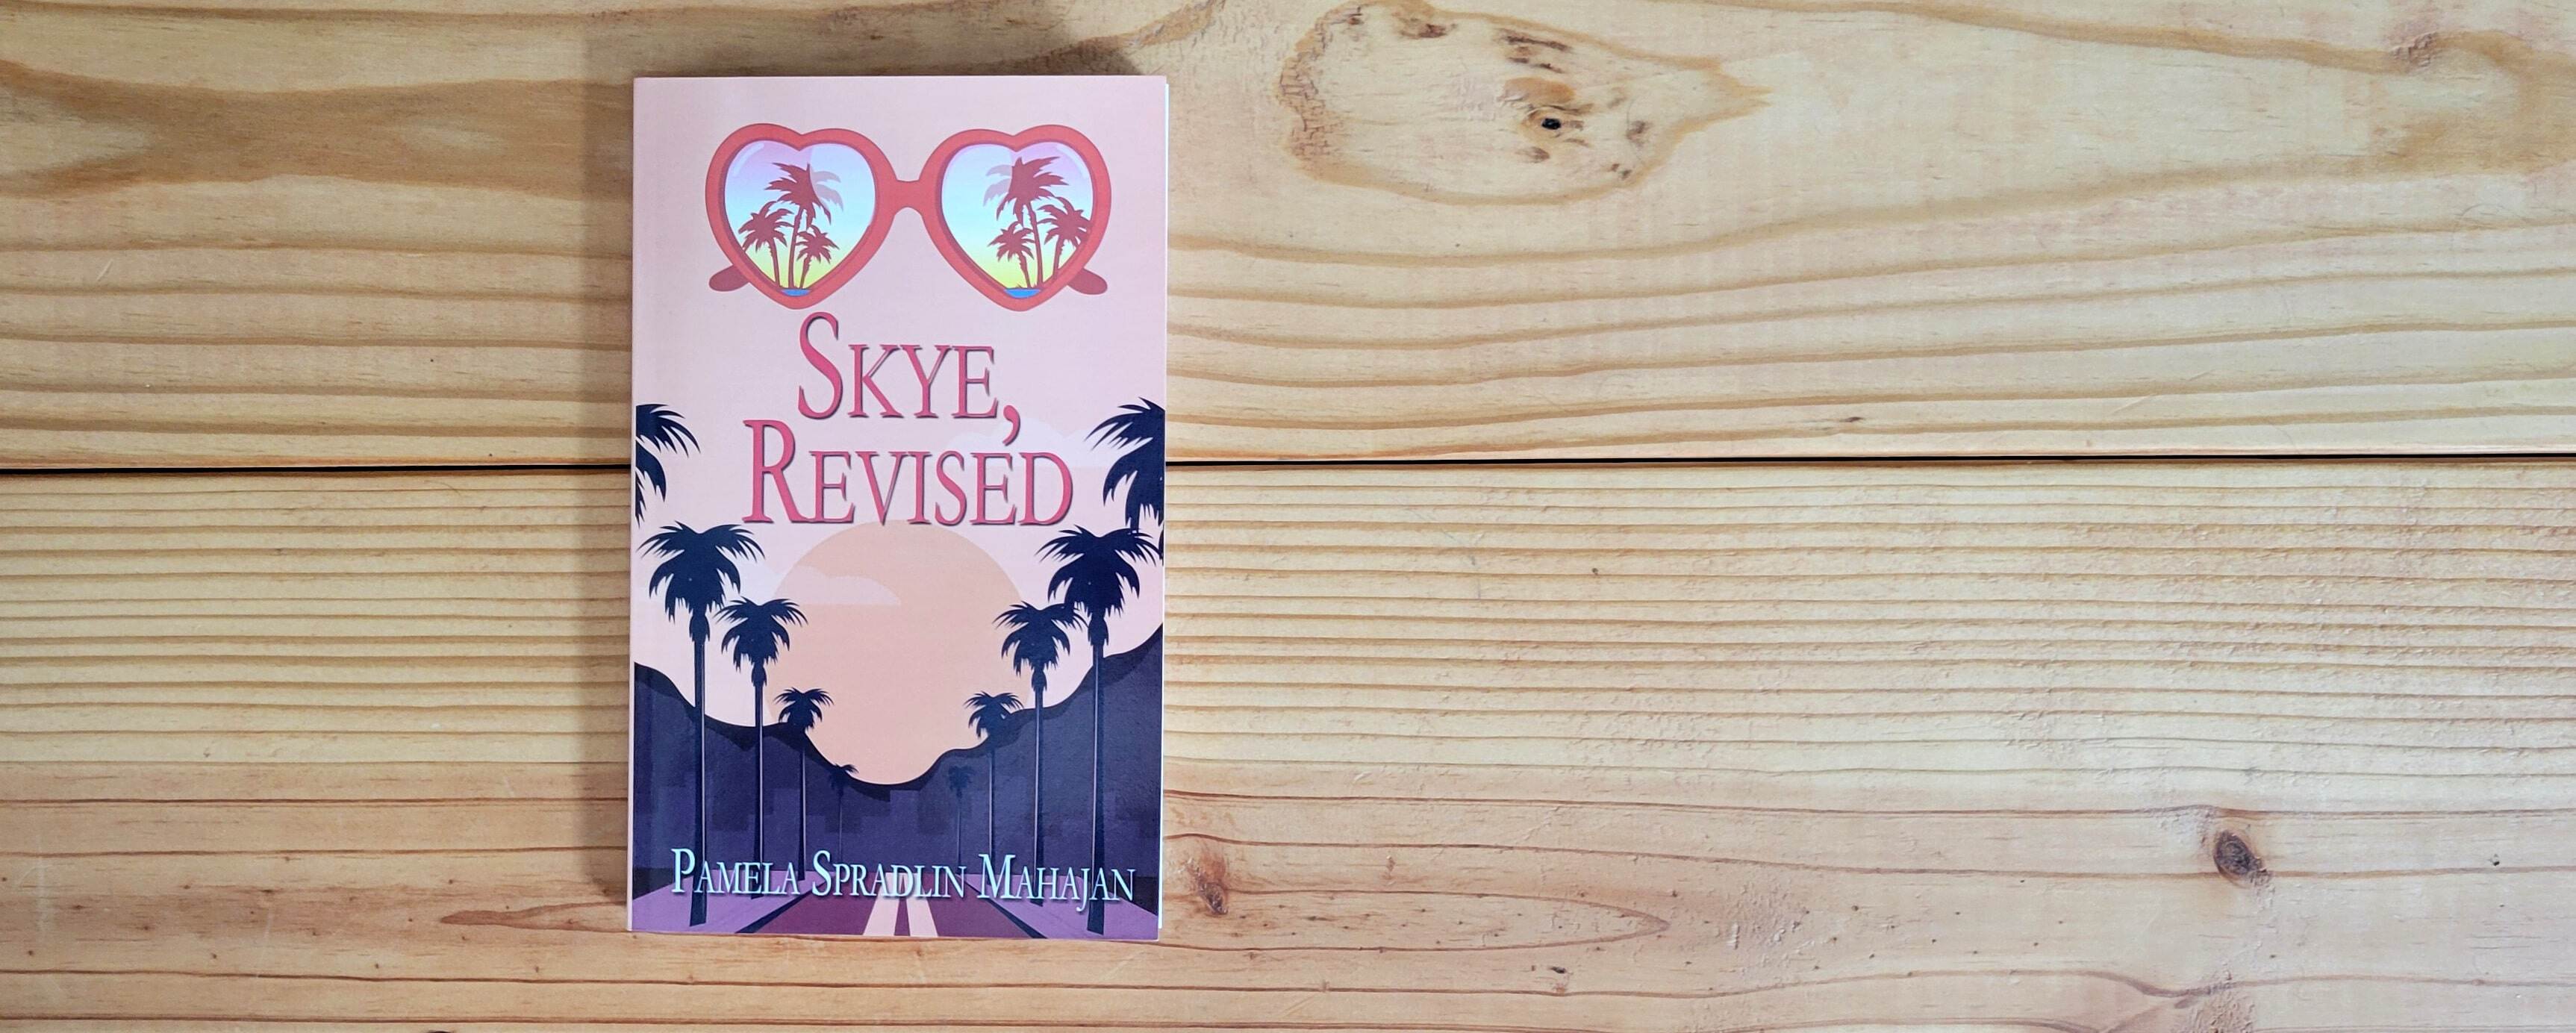 Book Cover of Skye, Revised by Pamela Spradlin Mahajan